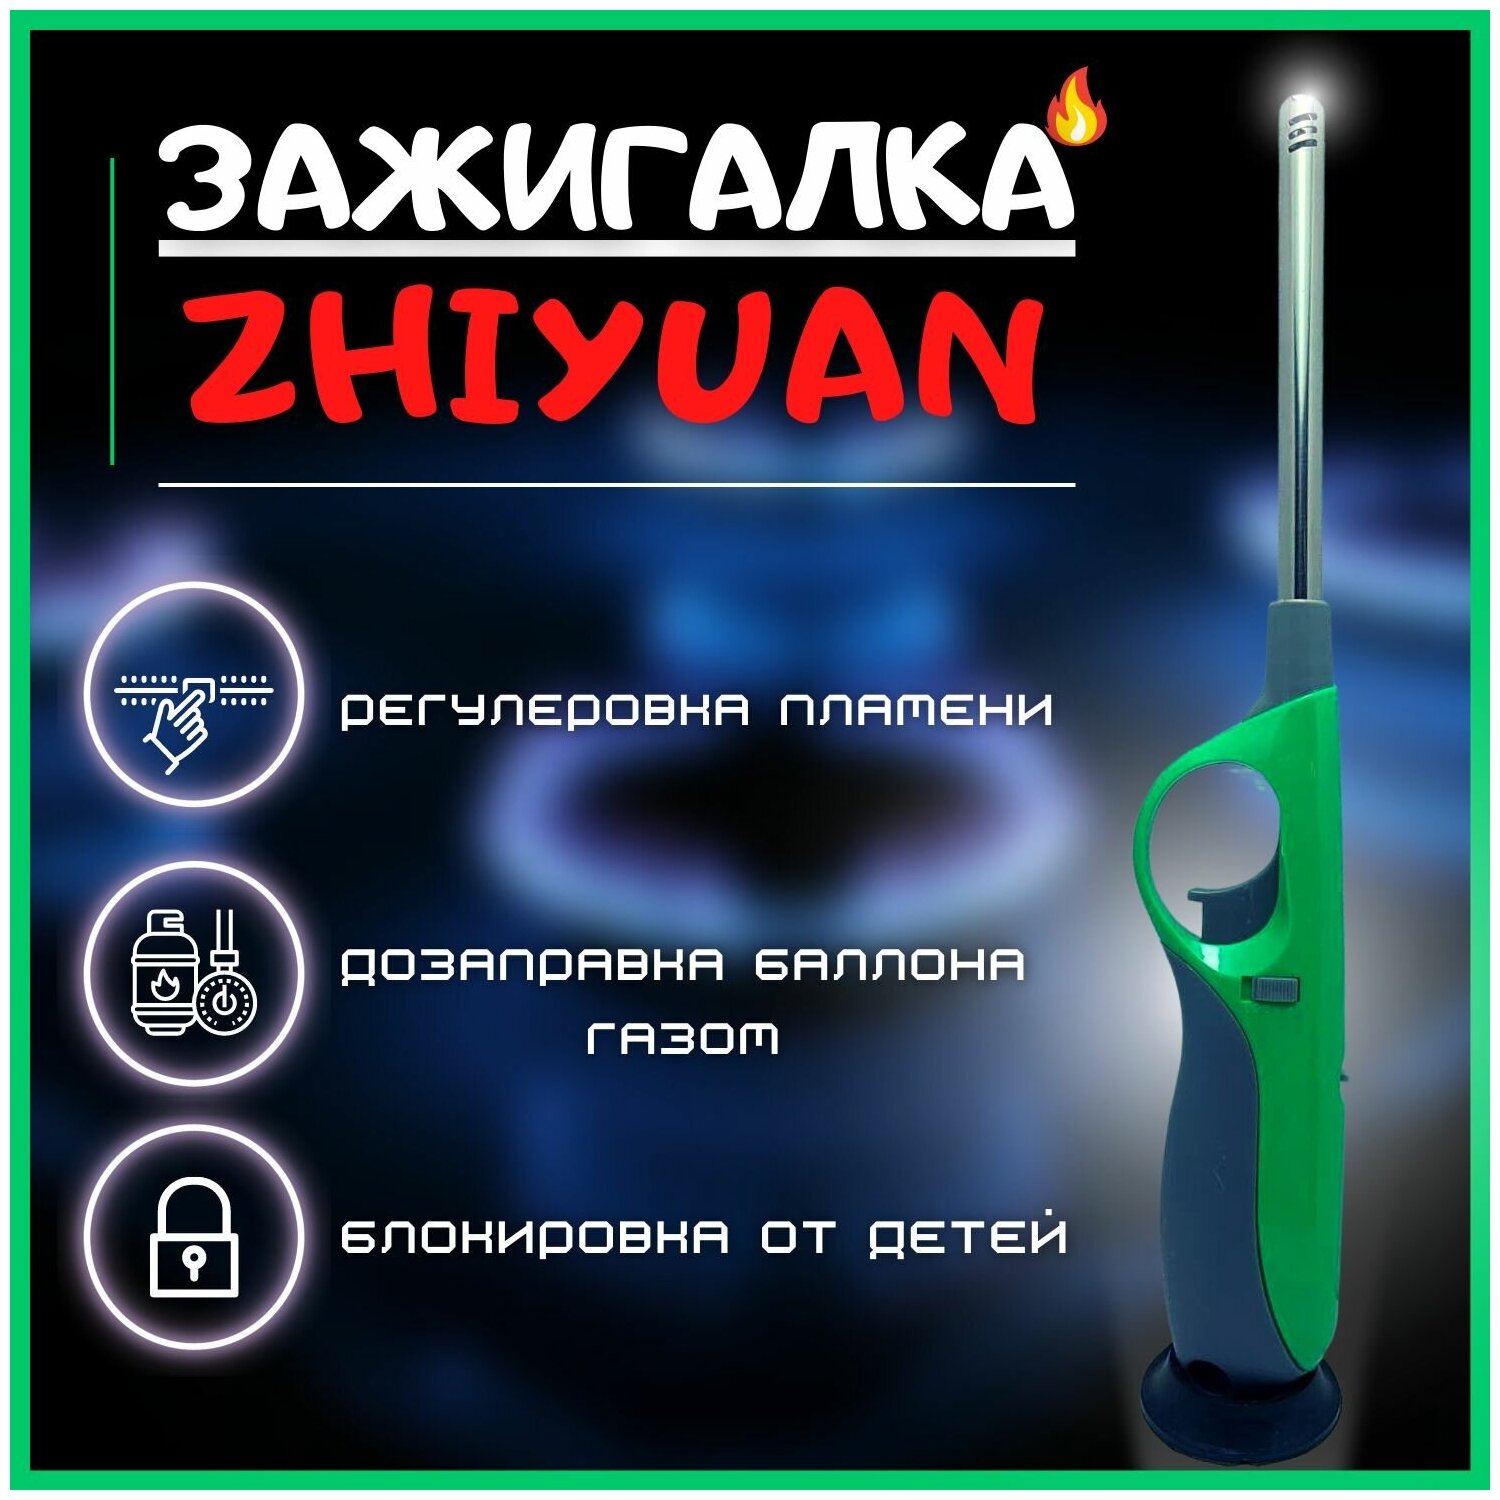 Газовая зажигалка ZHIYUAN (Зеленая) / Автозаправка баллончиком / Для кухонных плит  камина  костров  походов / Уют